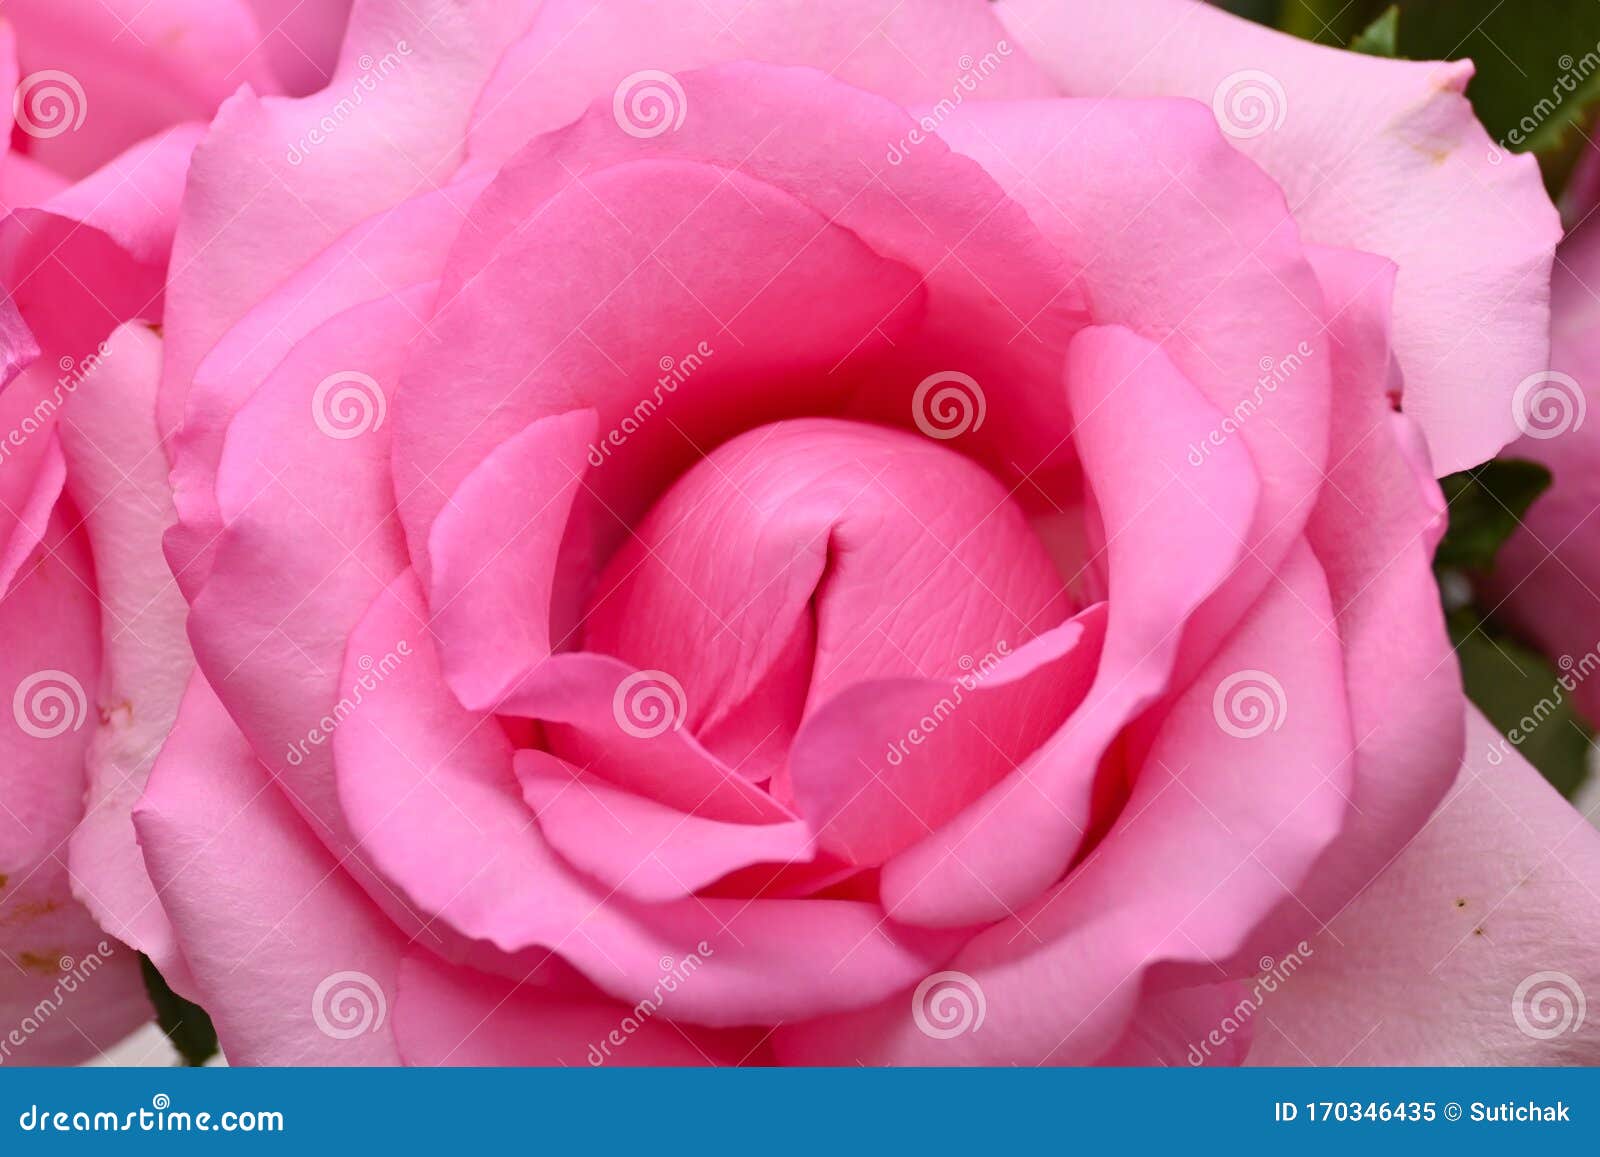 Hermosa Flor Rosa Rosa Rosa Rosa, Imagen Conceptual De Orgasmo Sexual  Imagen de archivo - Imagen de pares, belleza: 170346435